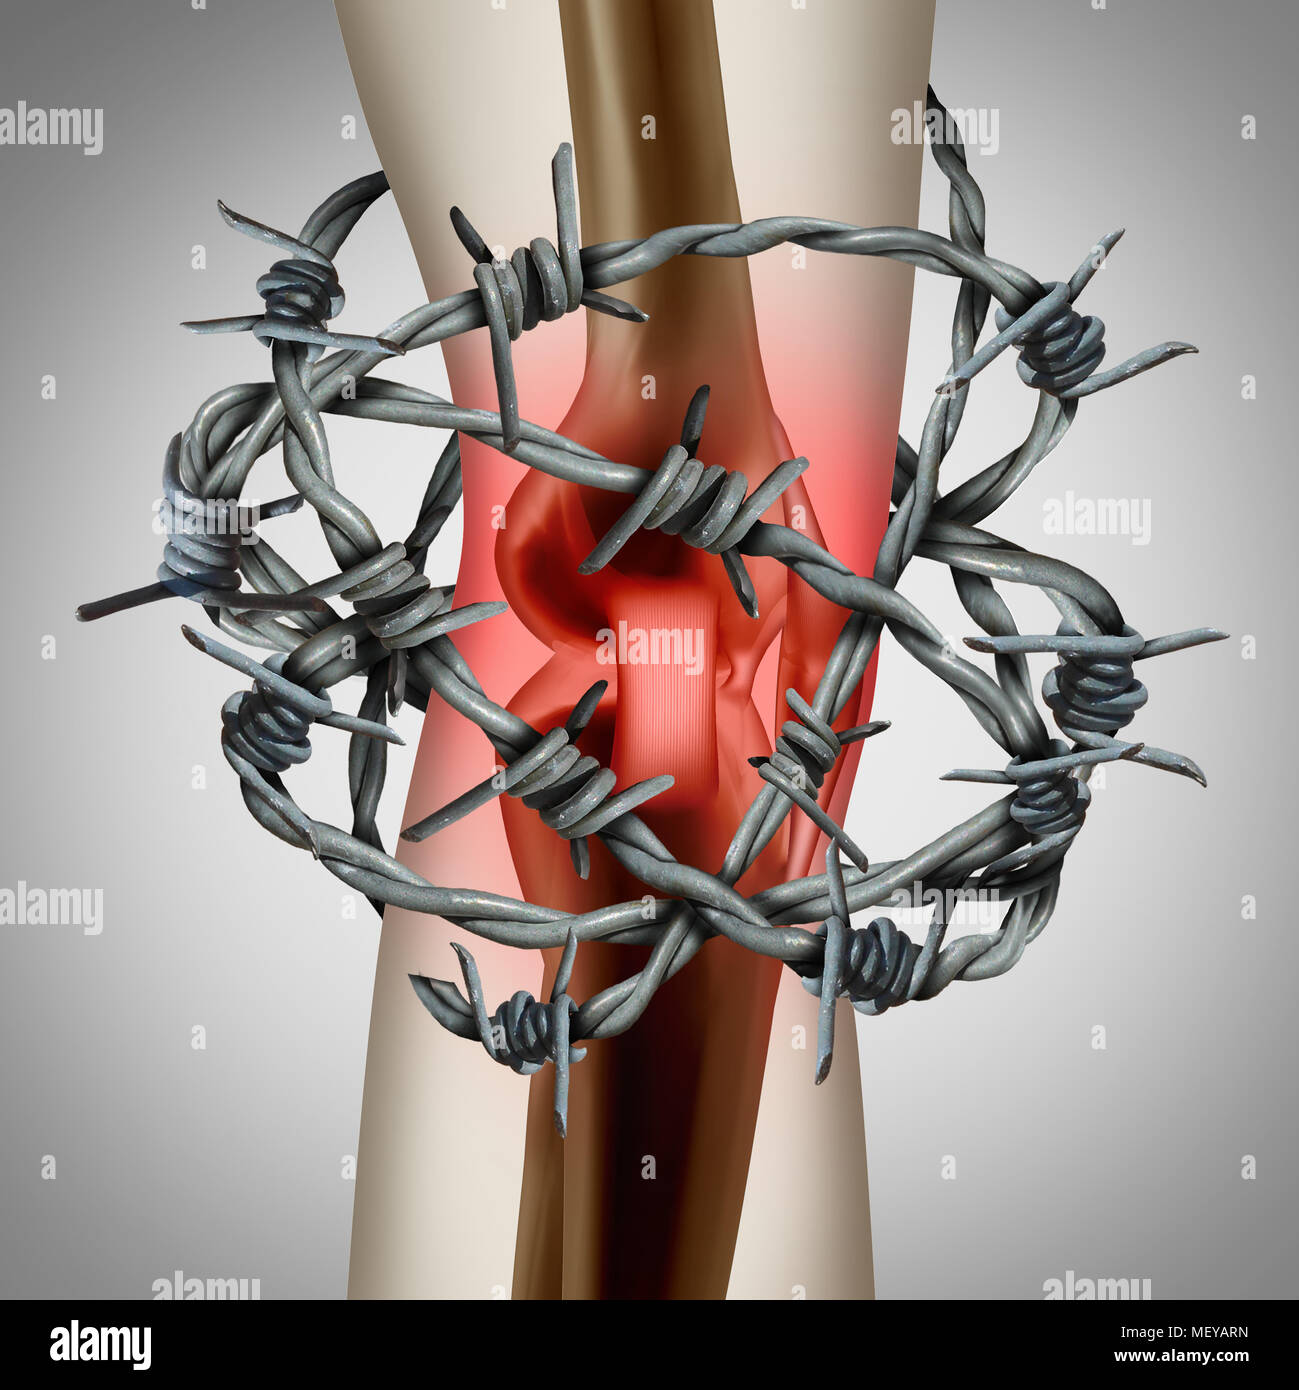 Knieschmerzen und schmerzlichen gemeinsamen Als medizinischen Abbildung eines menschlichen Skeletts zeigen eine Sportverletzung oder einem physischen Unfall mit Stacheldraht. Stockfoto